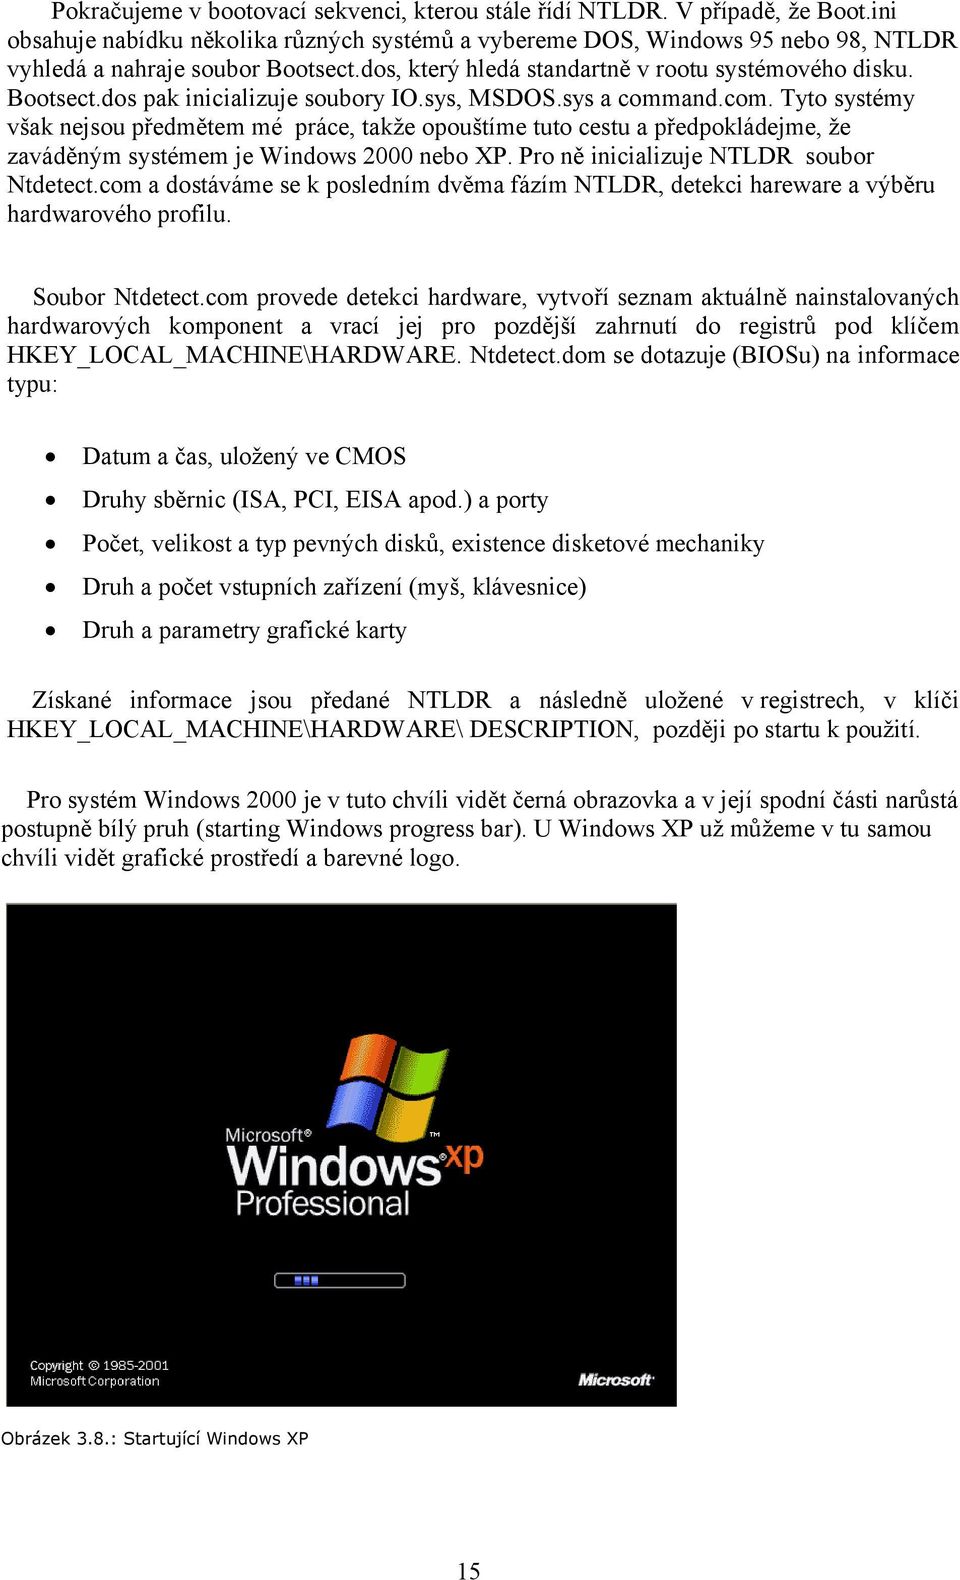 and.com. Tyto systémy však nejsou předmětem mé práce, takže opouštíme tuto cestu a předpokládejme, že zaváděným systémem je Windows 2000 nebo XP. Pro ně inicializuje NTLDR soubor Ntdetect.